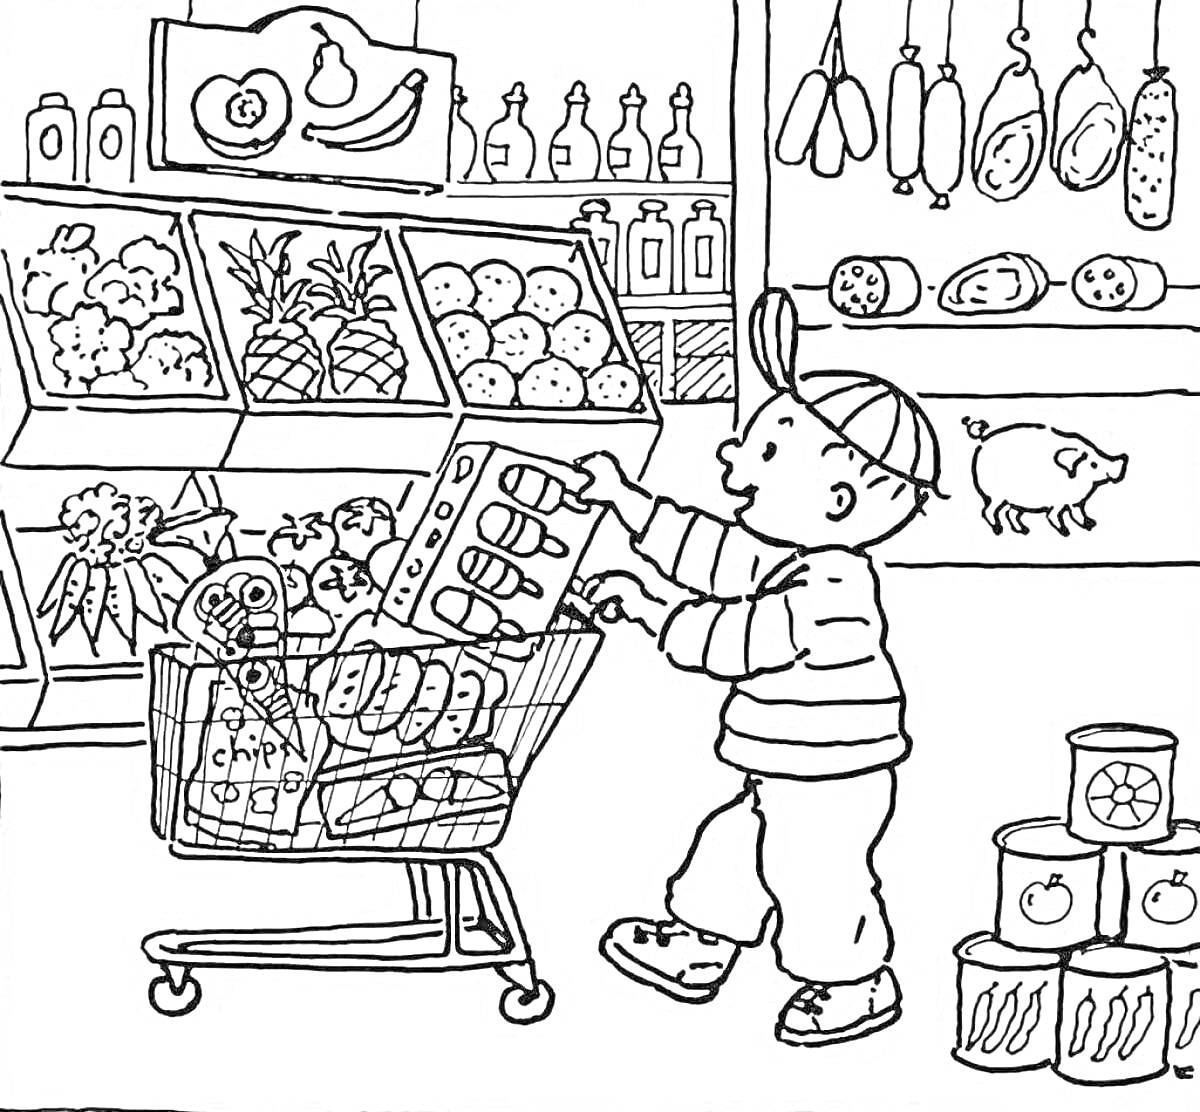 Раскраска Мальчик с тележкой в продуктовом магазине (овощи, фрукты, мясо, бутылки, корзина с продуктами, консервные банки)